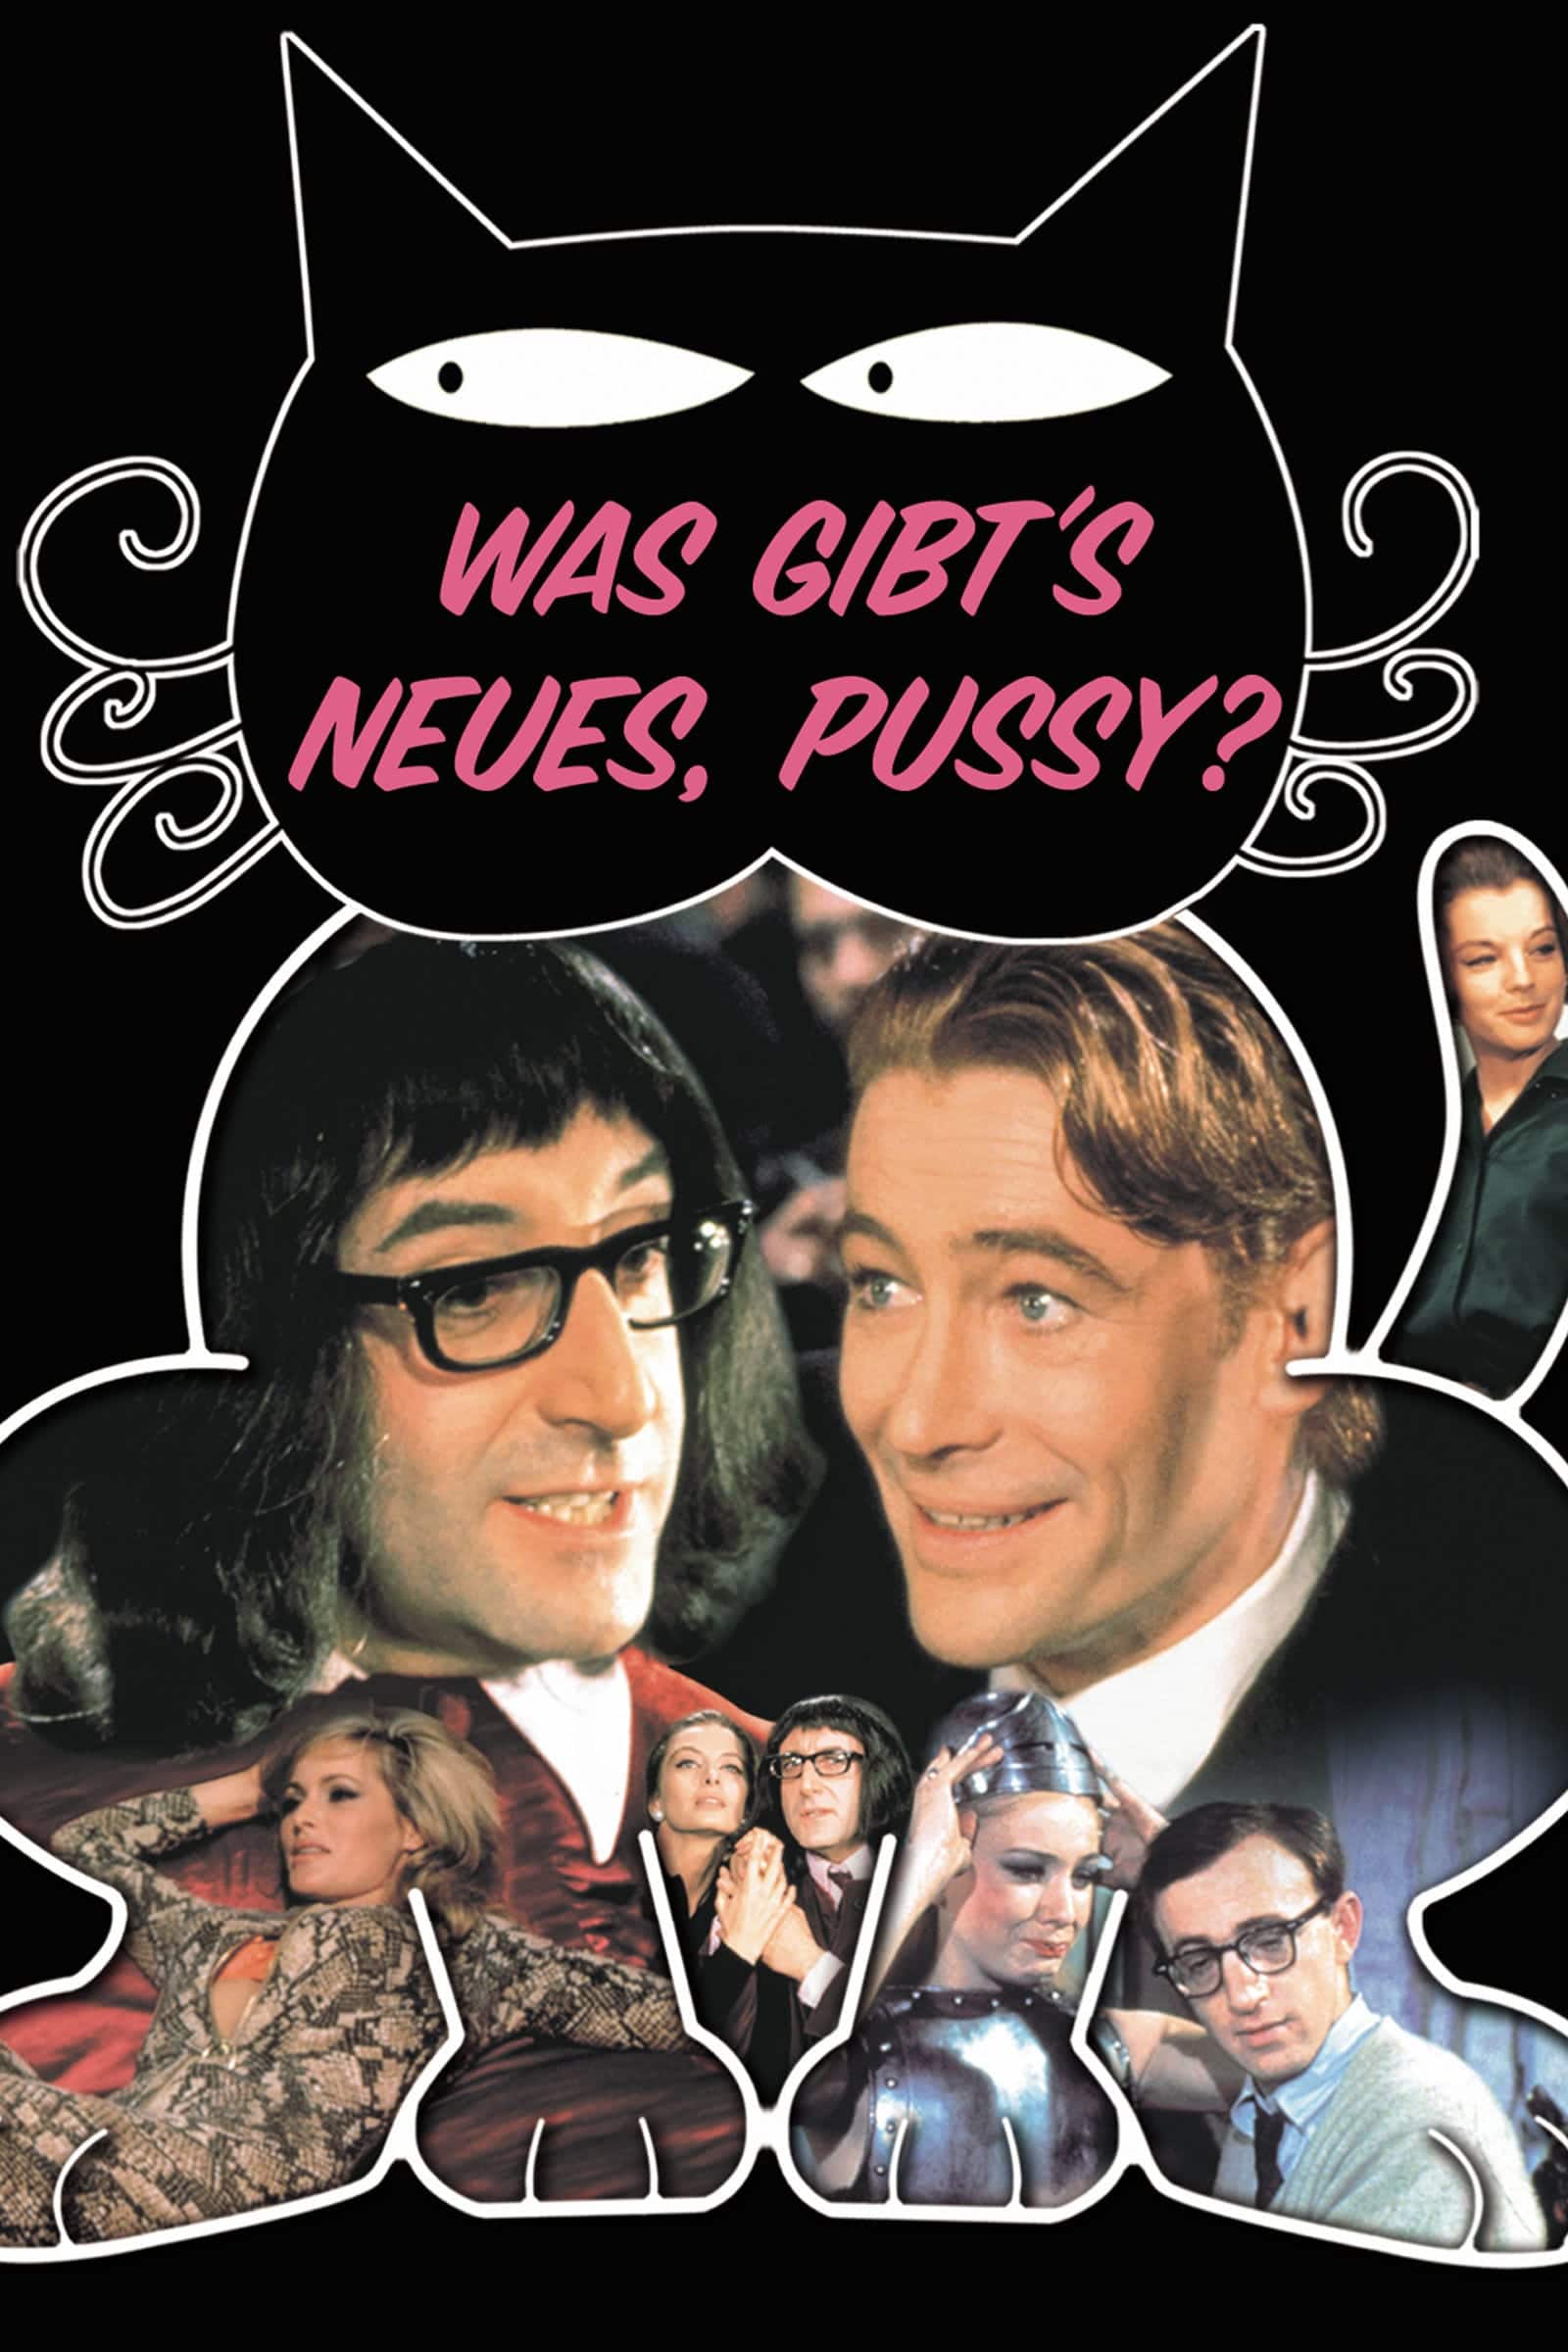 Plakat von "Was gibt's Neues, Pussy?"